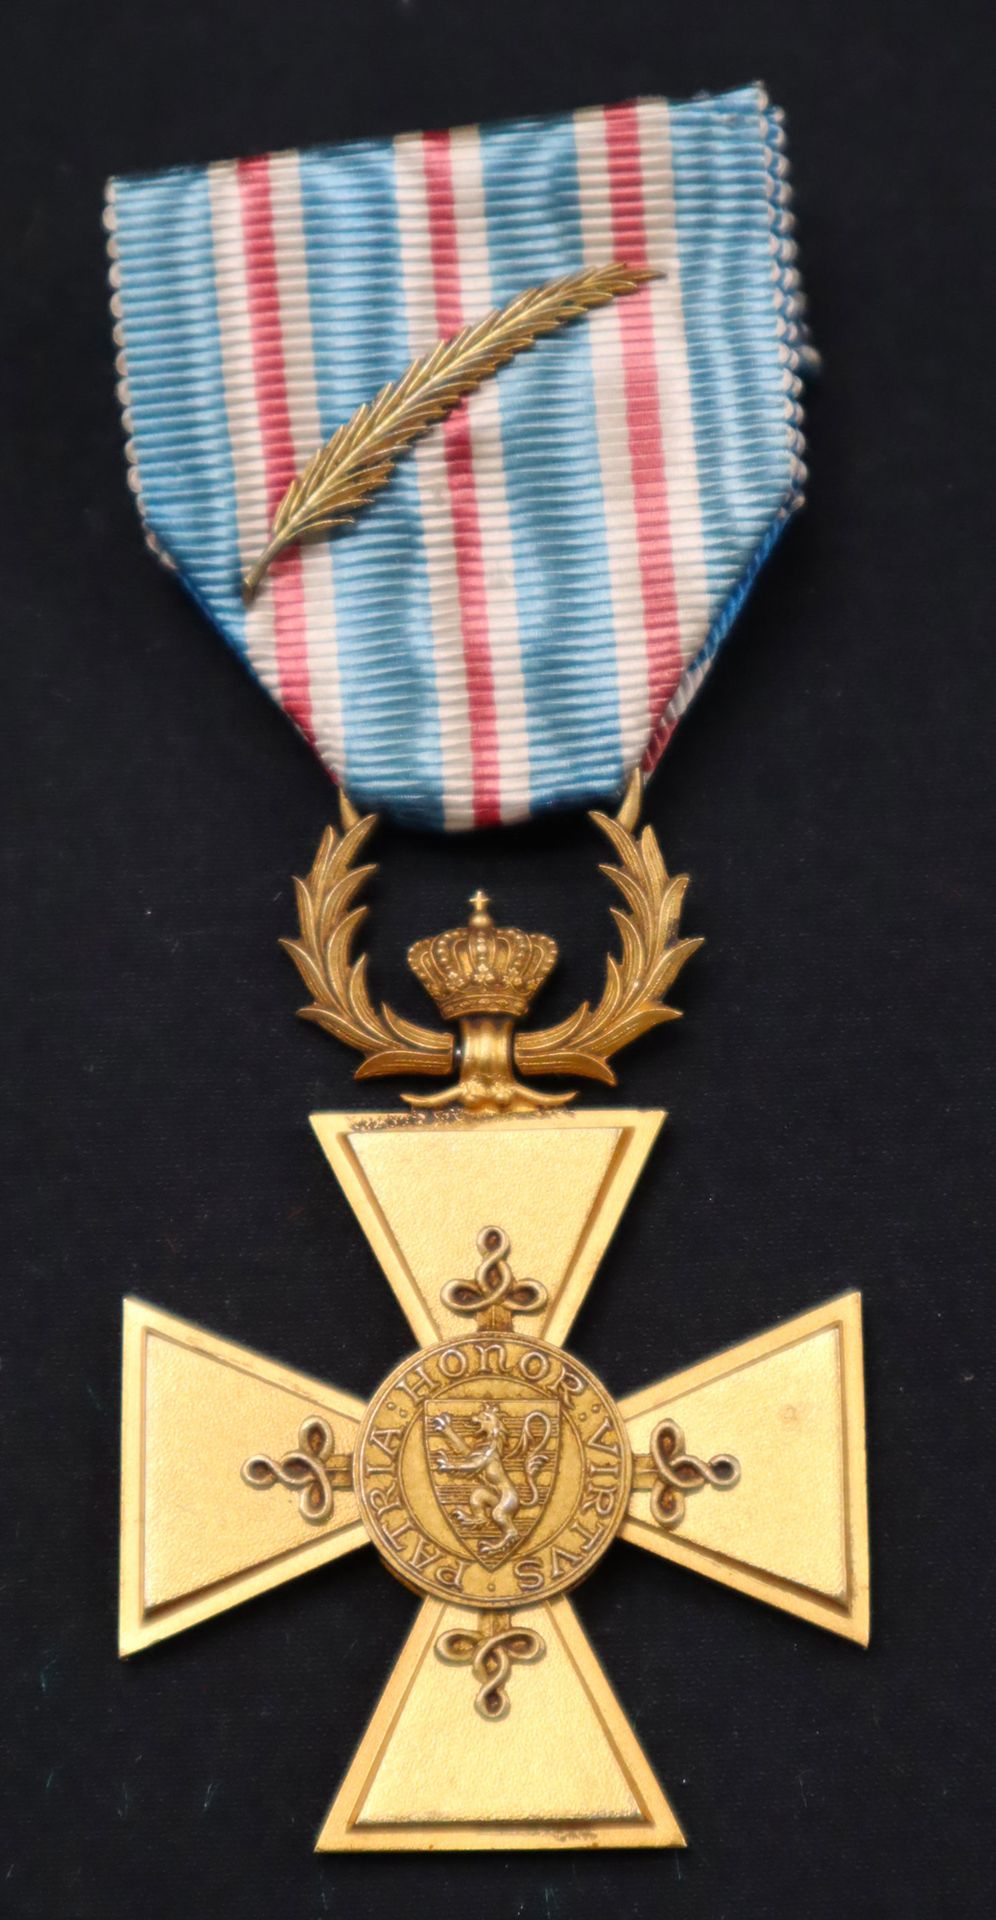 Null 卢森堡--荣誉和军事功勋十字勋章，镀金，带有鎏金手掌的丝带（已褪色）。
53 x 40.5 mm
法国，20世纪中期。
1951年成立，分为三个等级，&hellip;